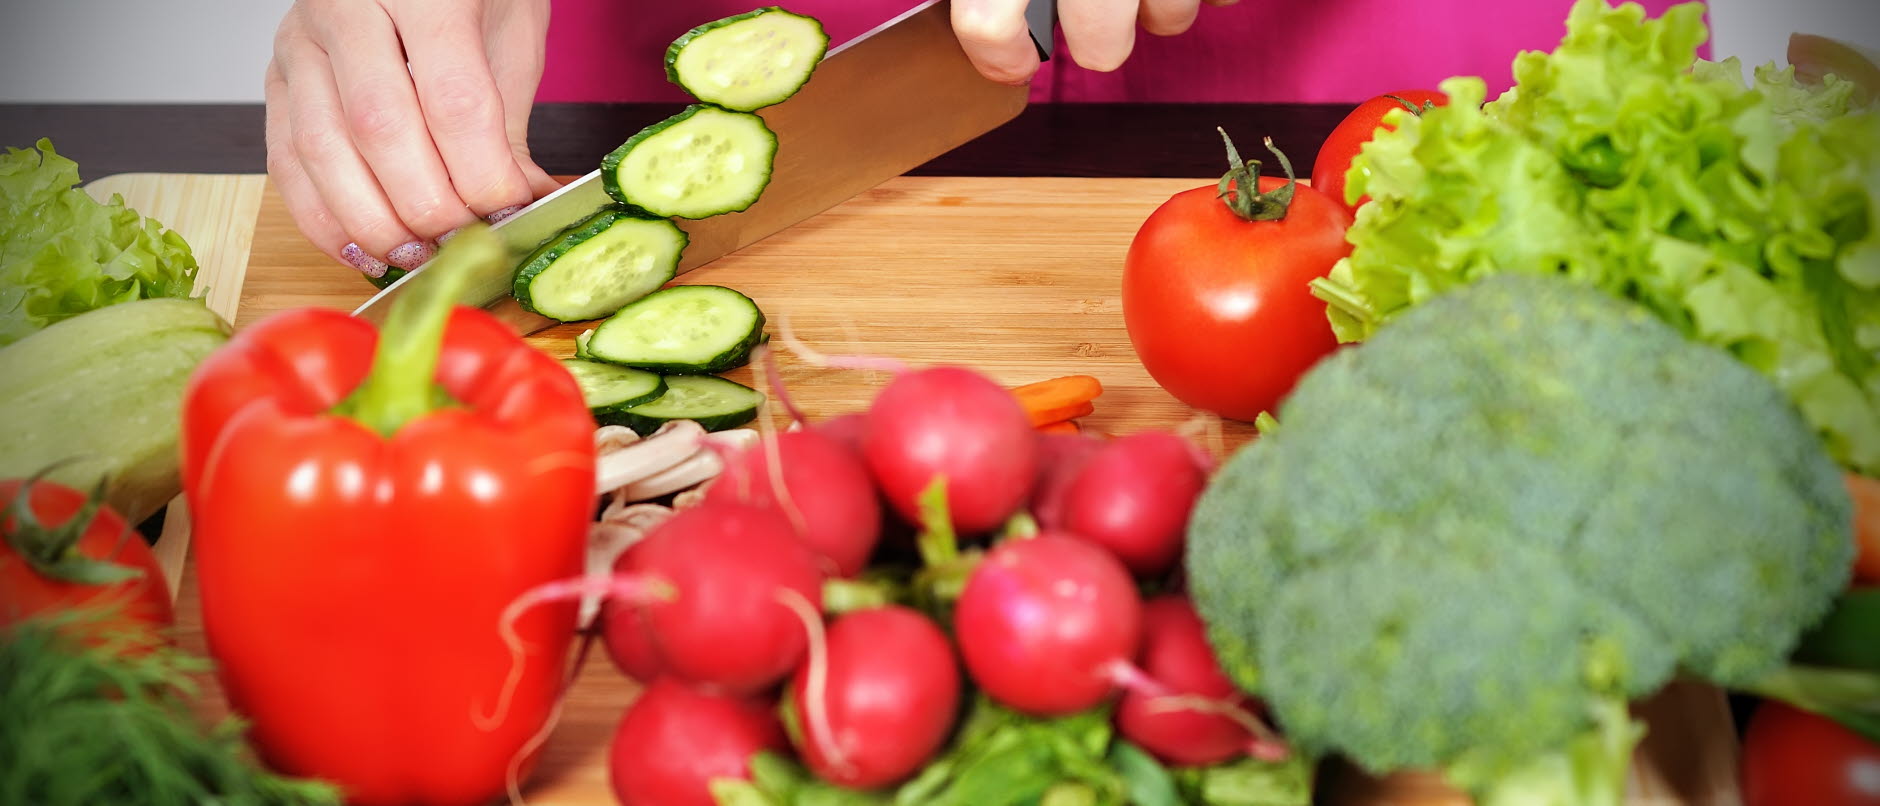 Bild visar olika grönsaker framför en skärbräda och en persom som skär upp gurka